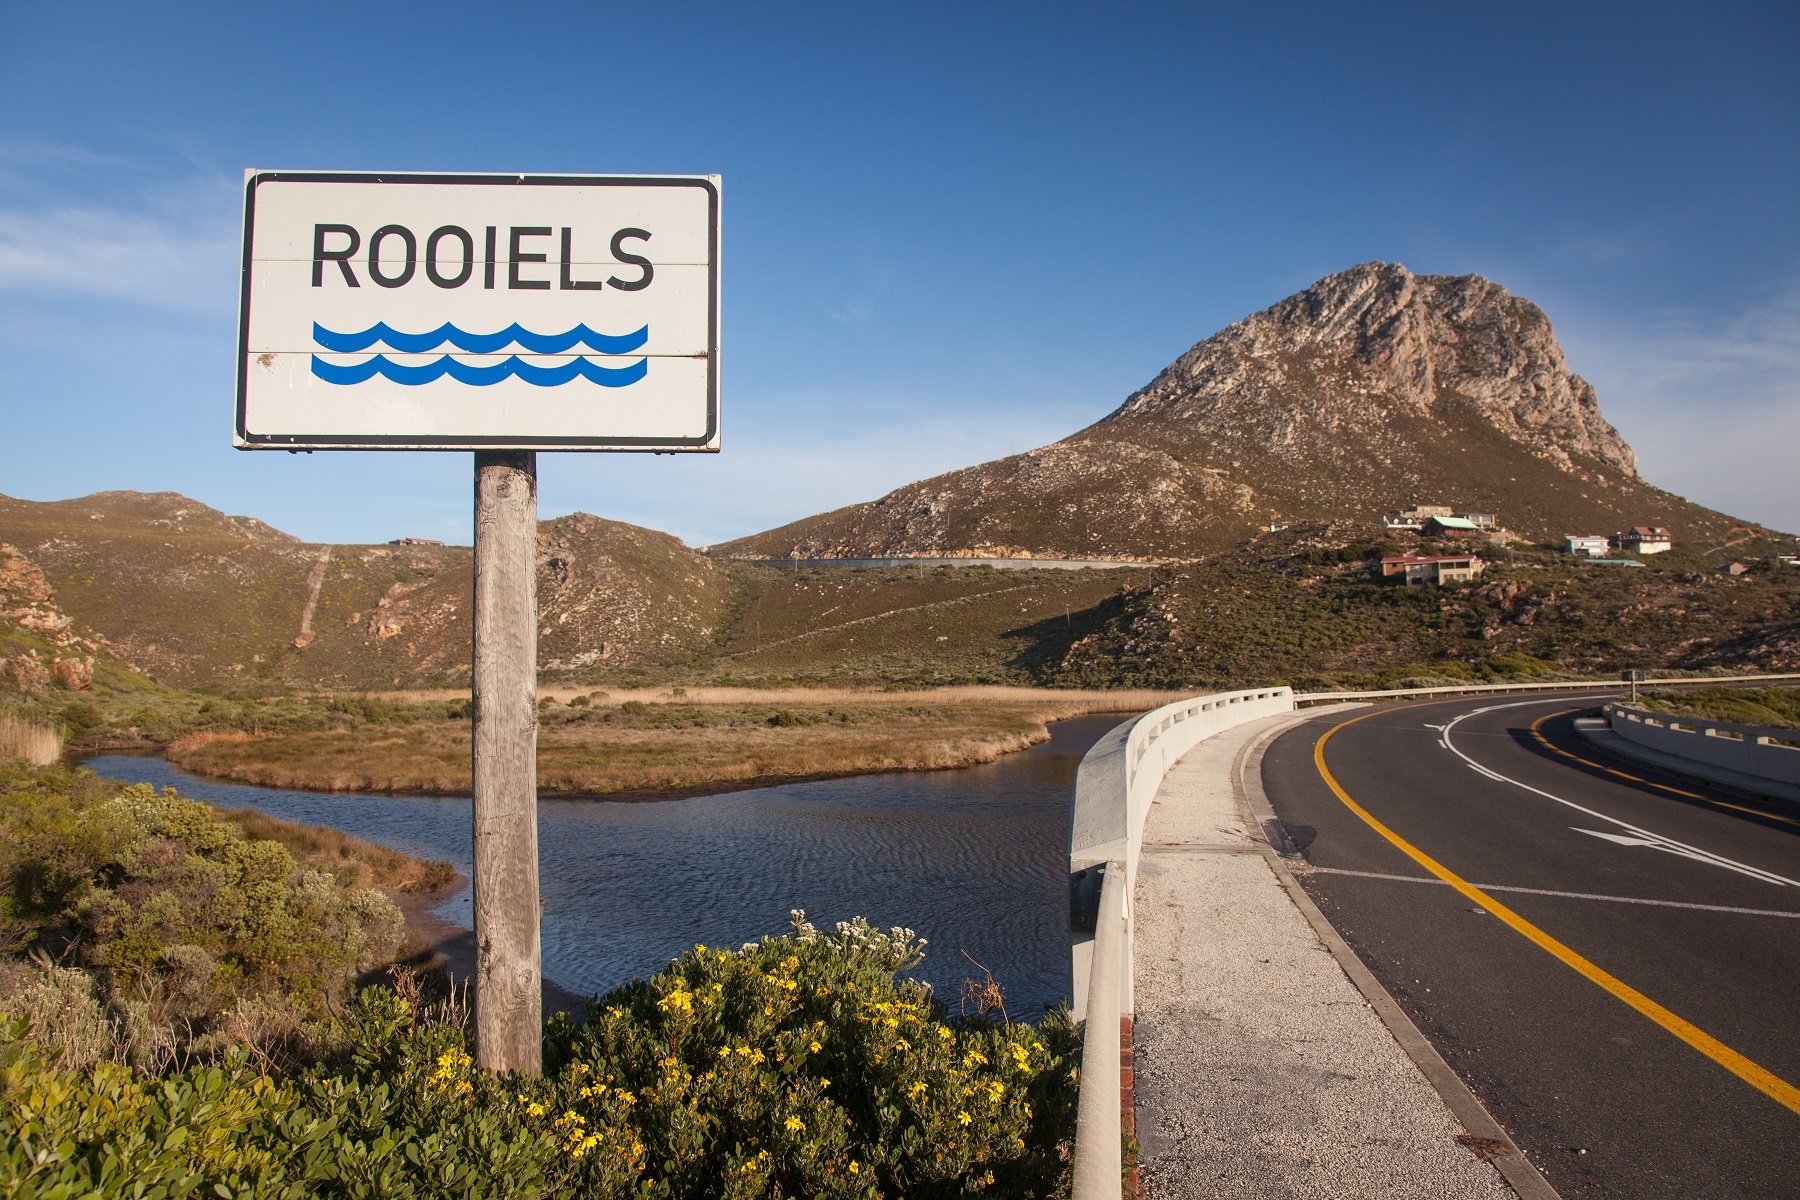 rooiels-bridge-sign-river